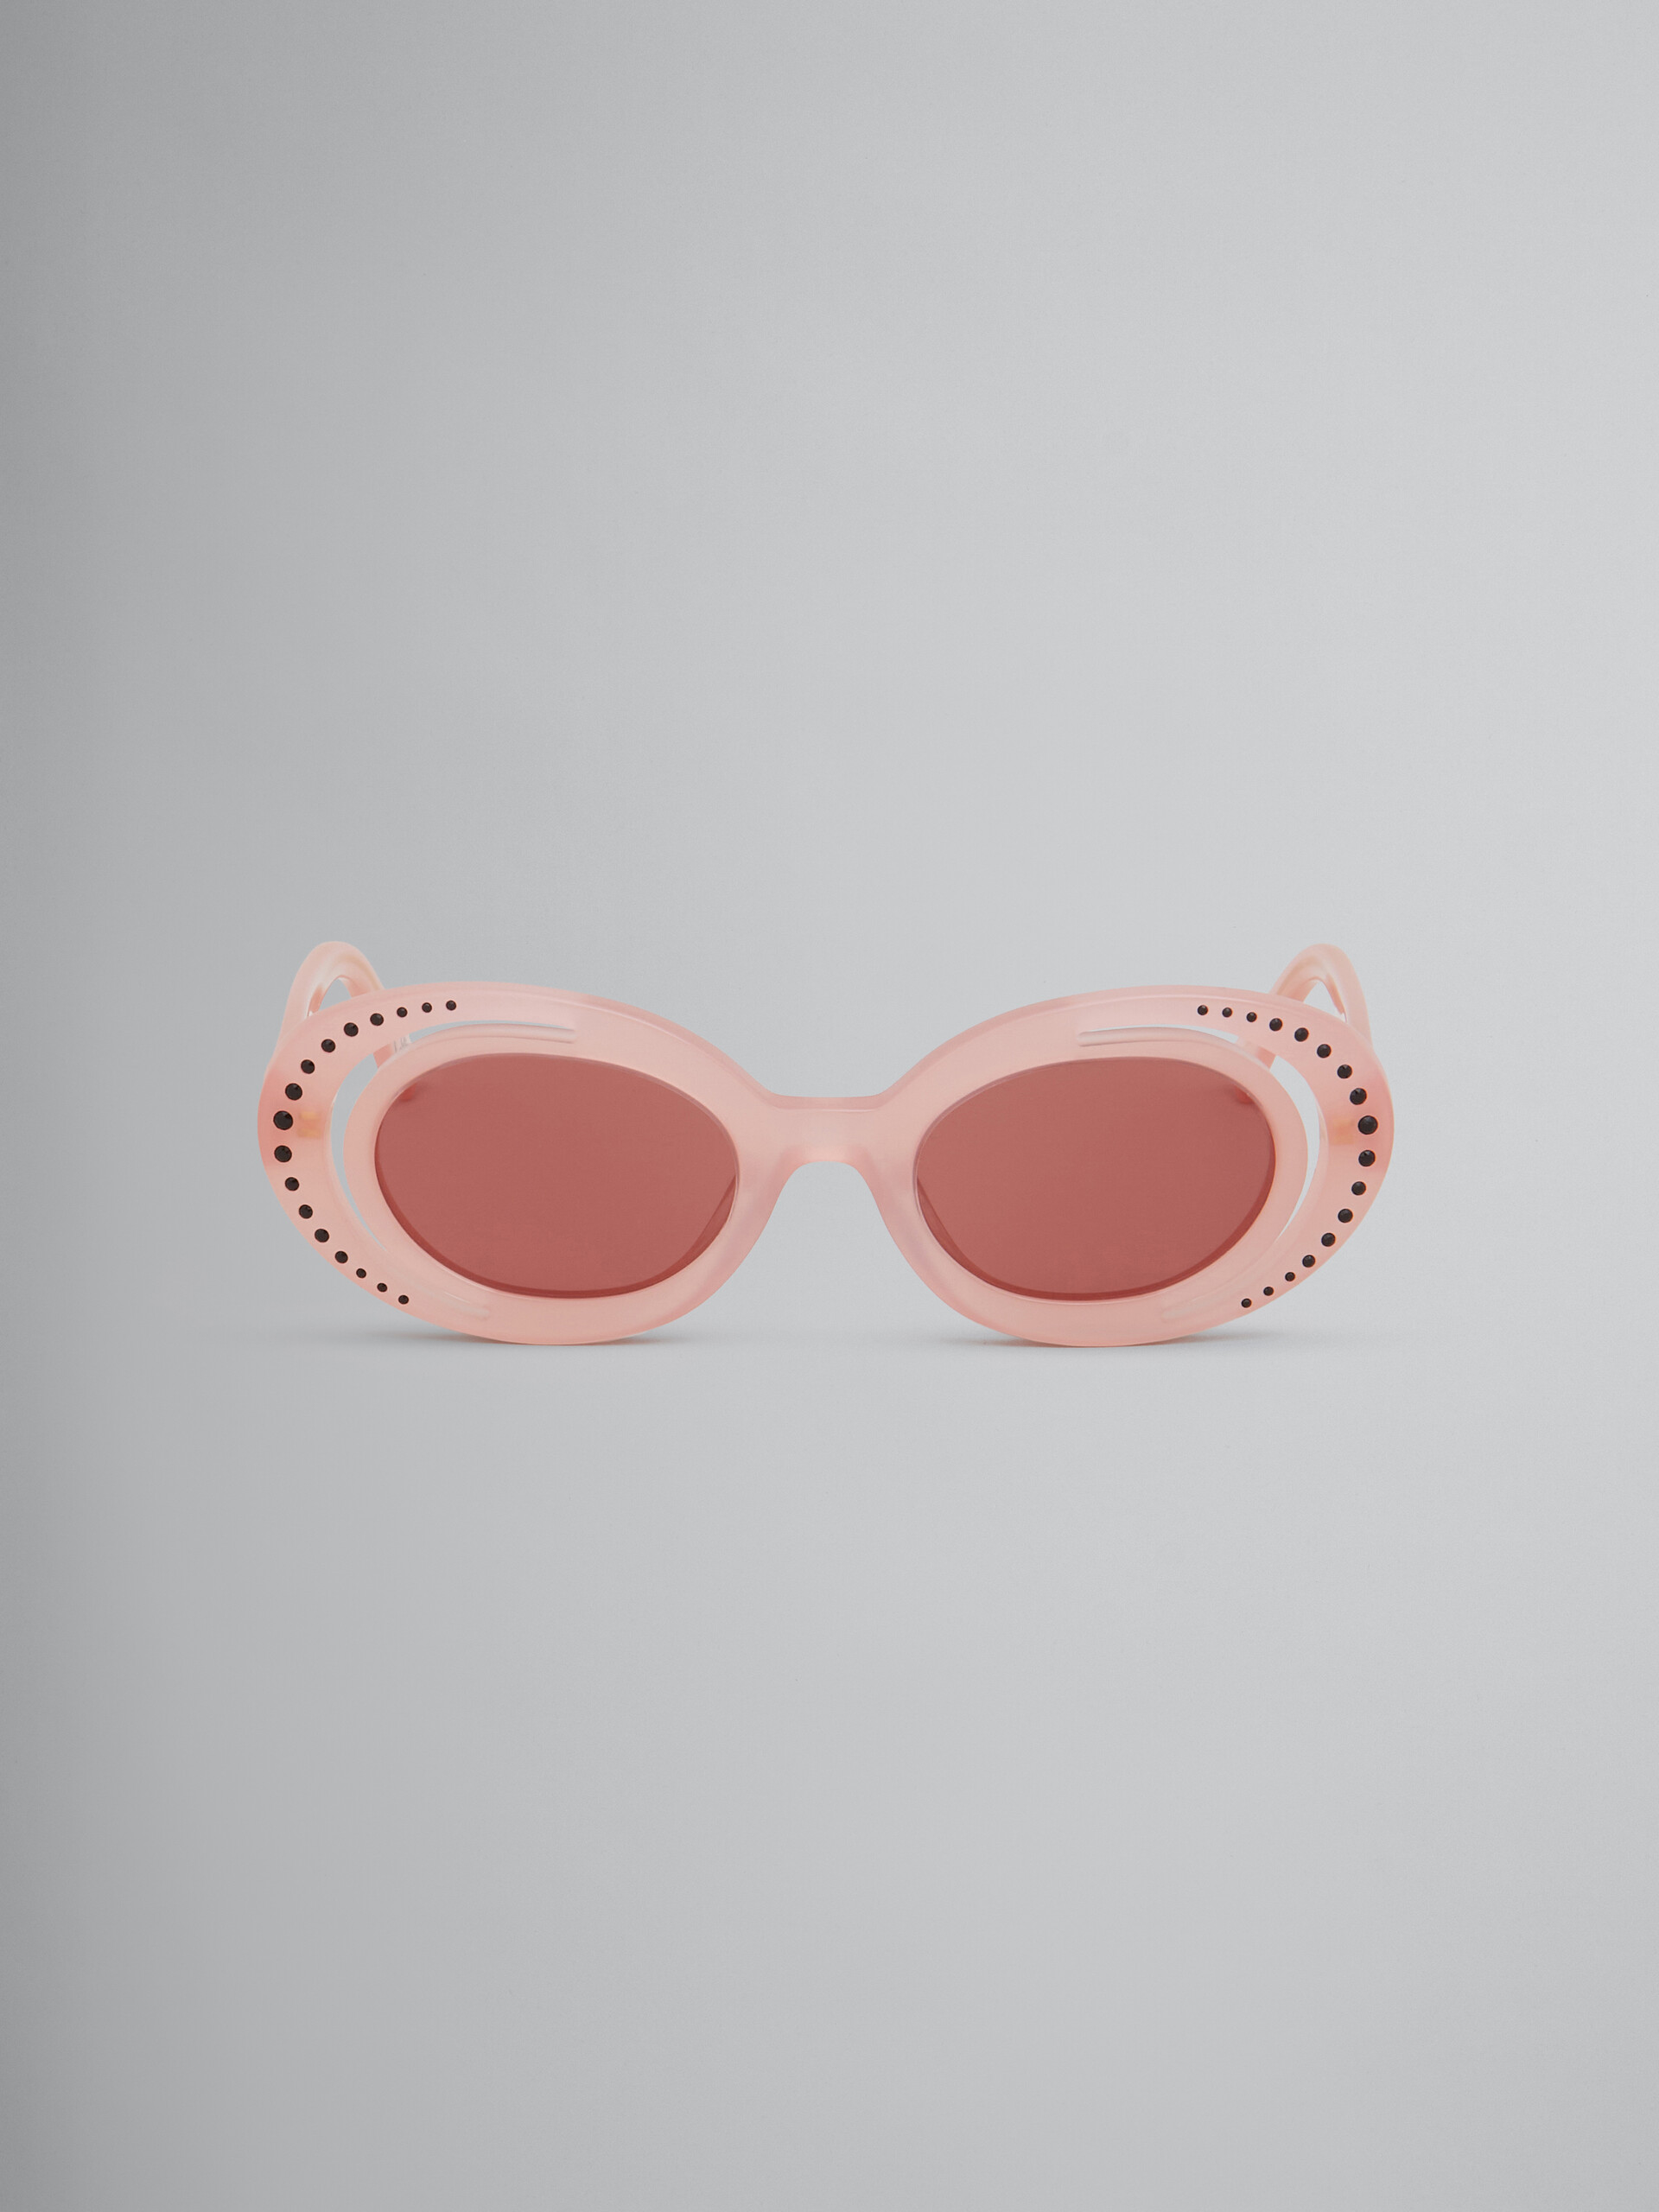 Gafas de sol color rosa empolvado Zion Canyon - óptica - Image 1